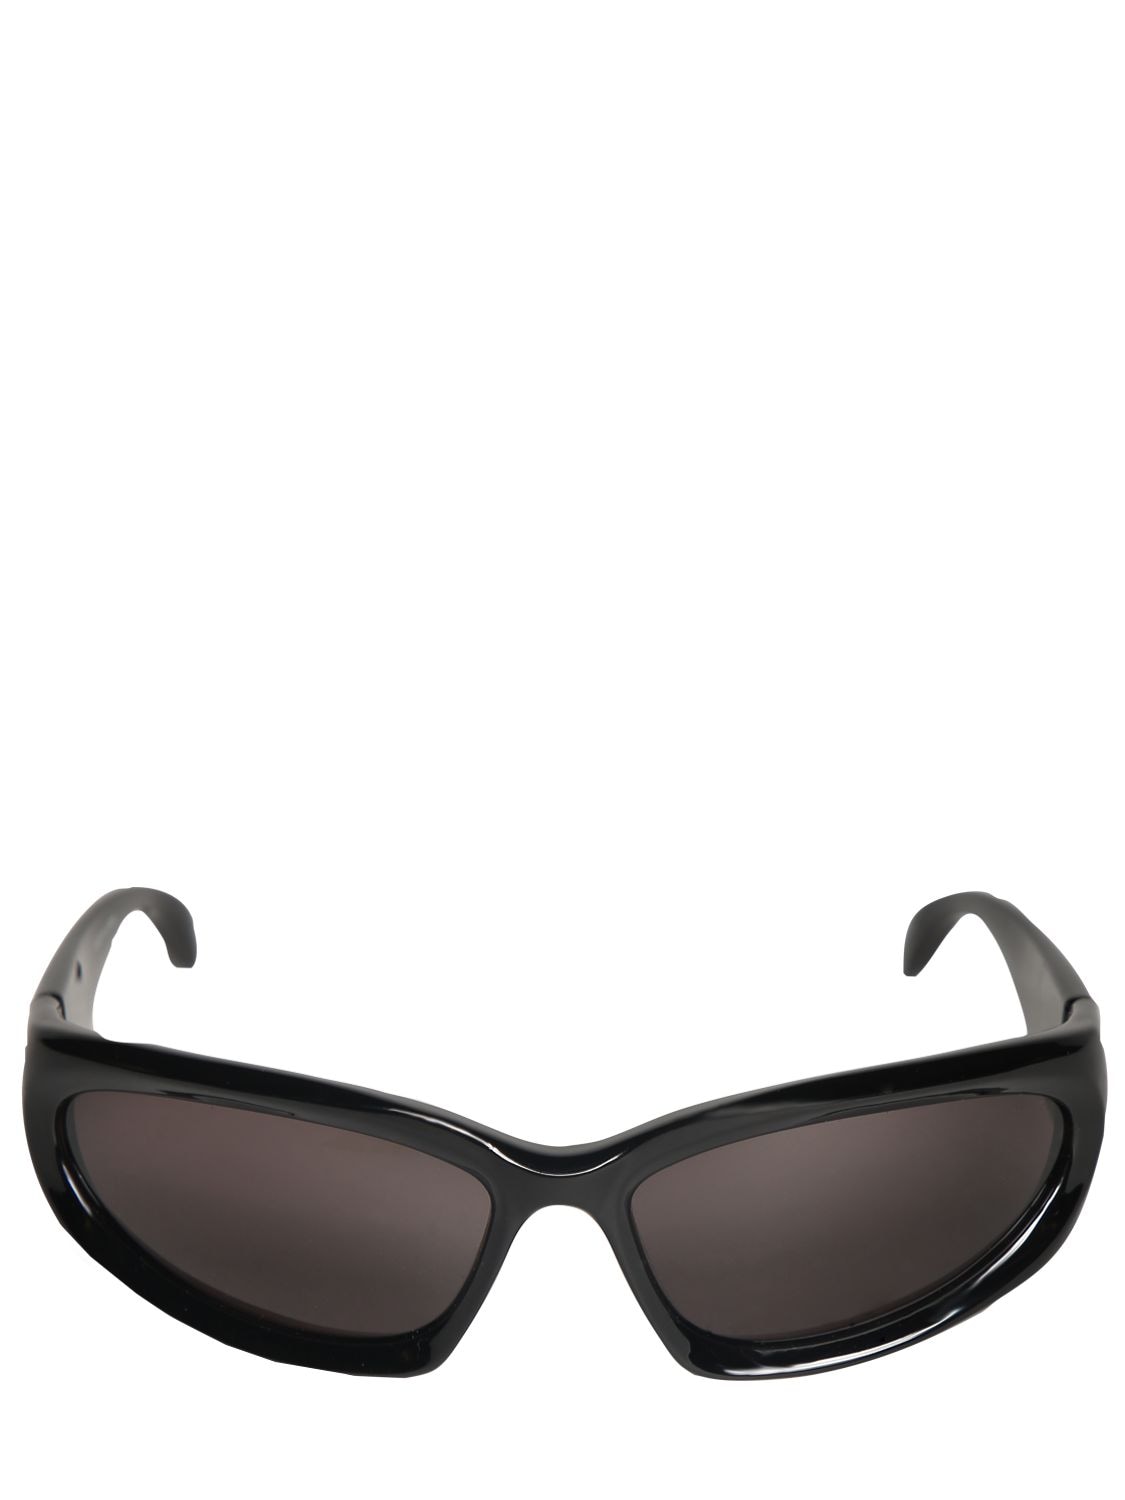 Balenciaga Swift Oval 0157s Sunglasses In Black,grey